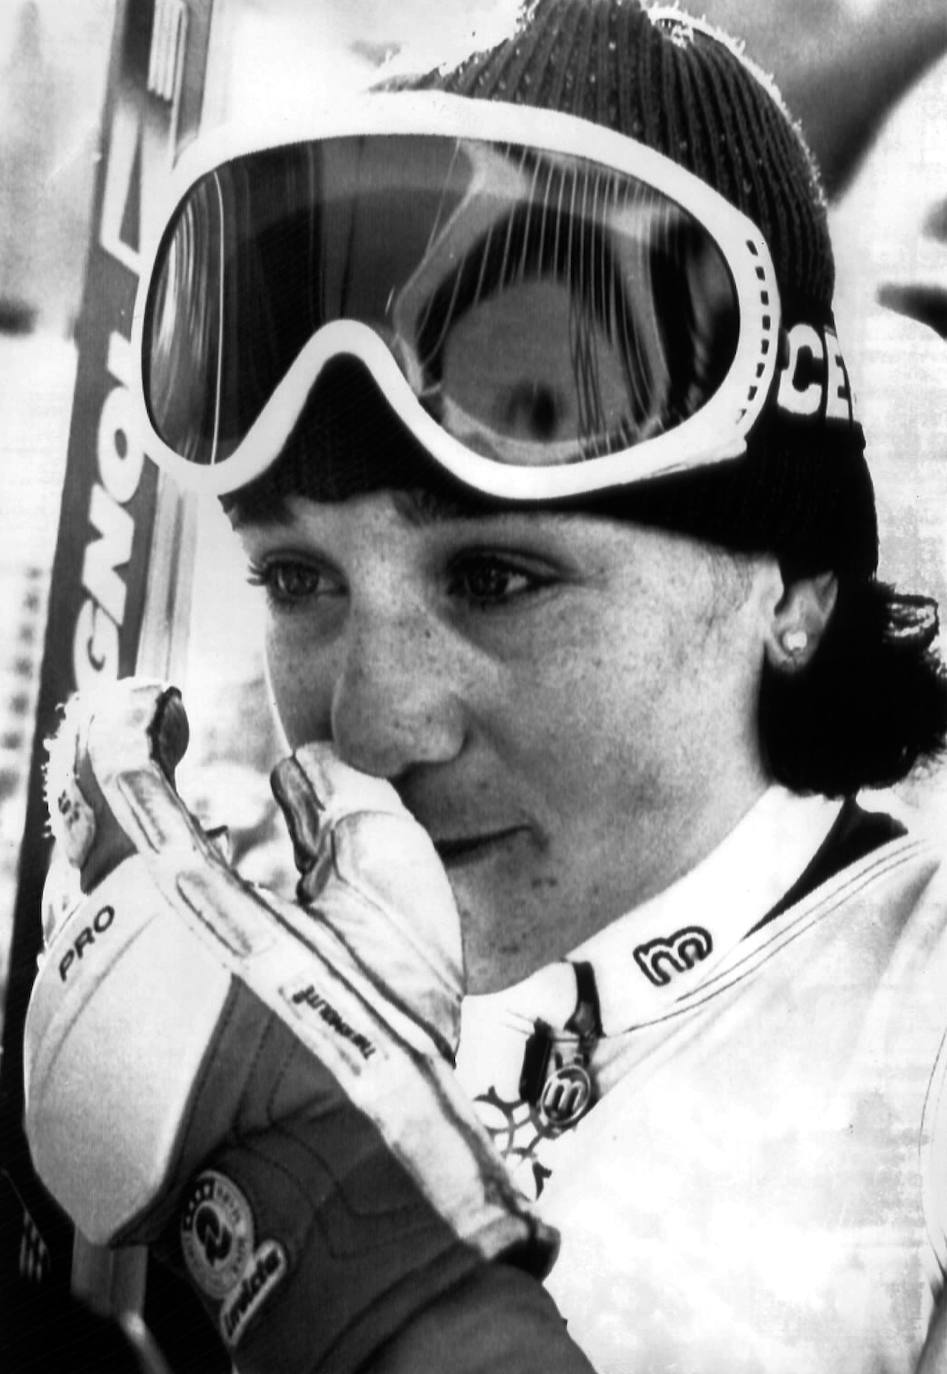 Su primer triunfo en Copa del Mundo llegó en el gigante de Vail (EEUU), en 1985; antes de subir a lo alto del podio en tres pruebas de eslalon: las de Sestriere'88 (Italia), Morzine'91 (Francia) y Lech'92 (Austria).